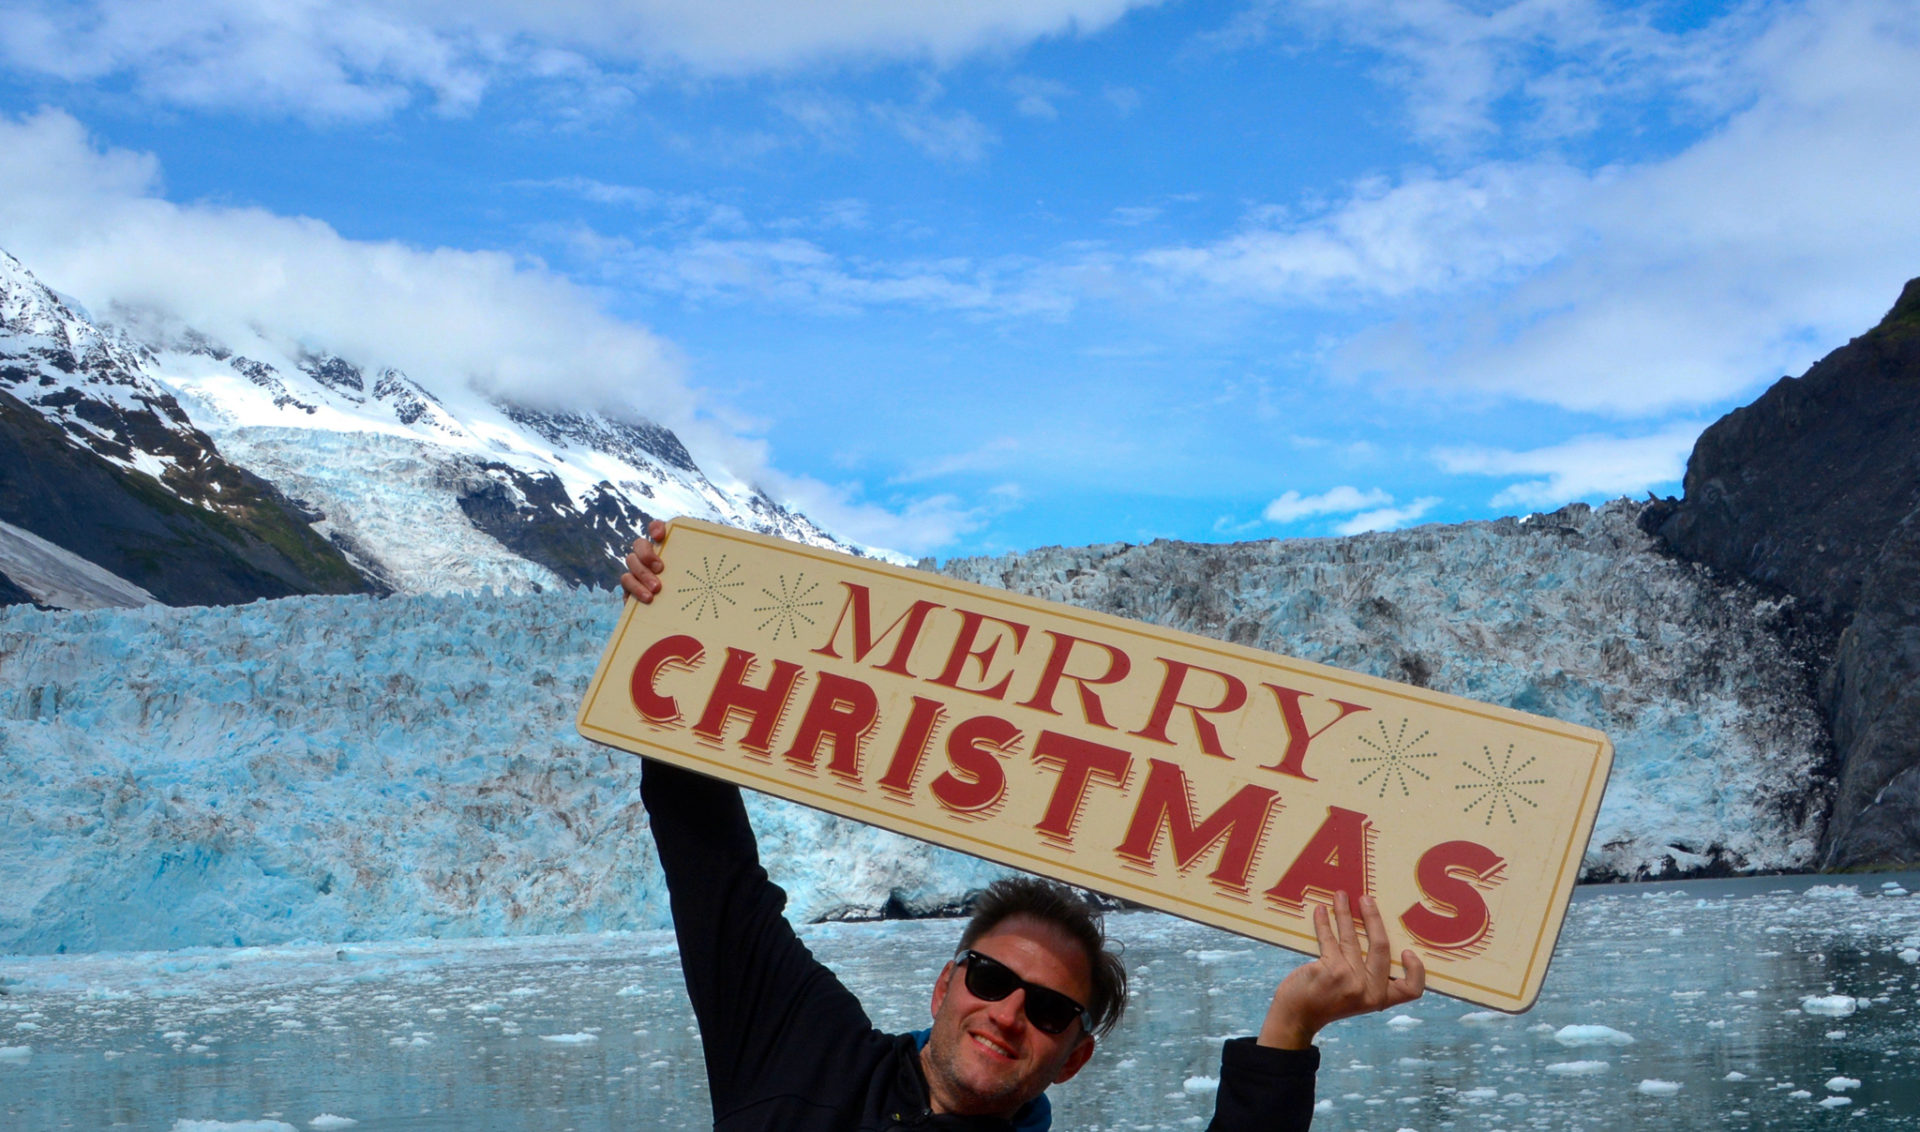 Autor Ralf Johnen hält vor einem Gletscher in Alaska ein Schild mit der Aufschrift "Merry Christmas" hoch